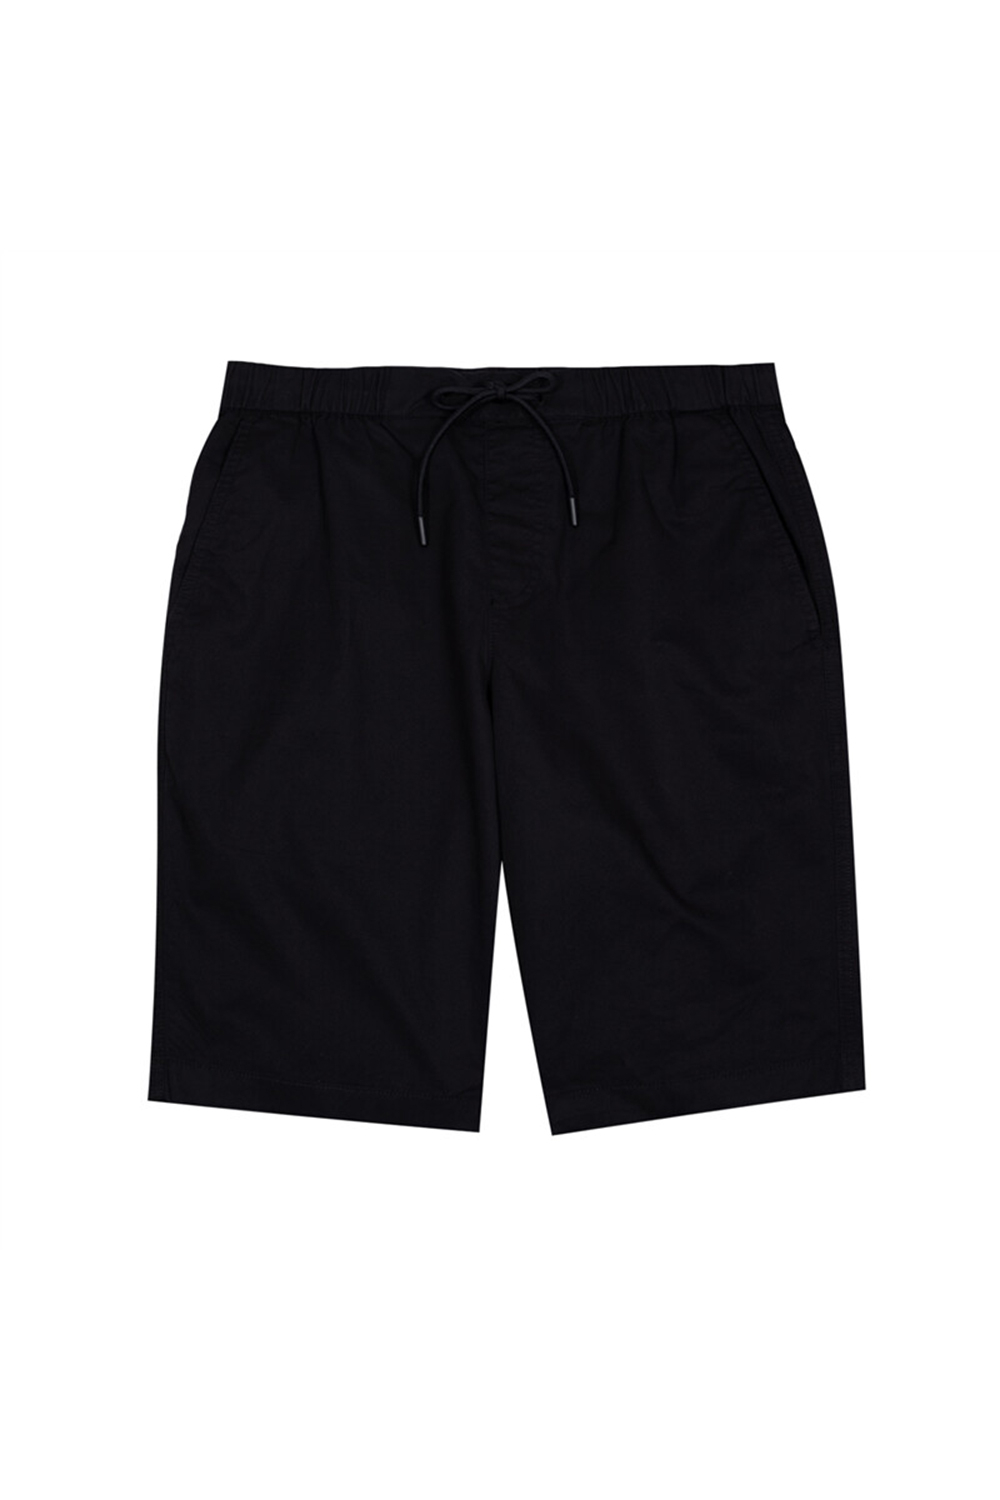 Giordano Mens Mid-Rise Bermuda Black Shorts | Odel.lk